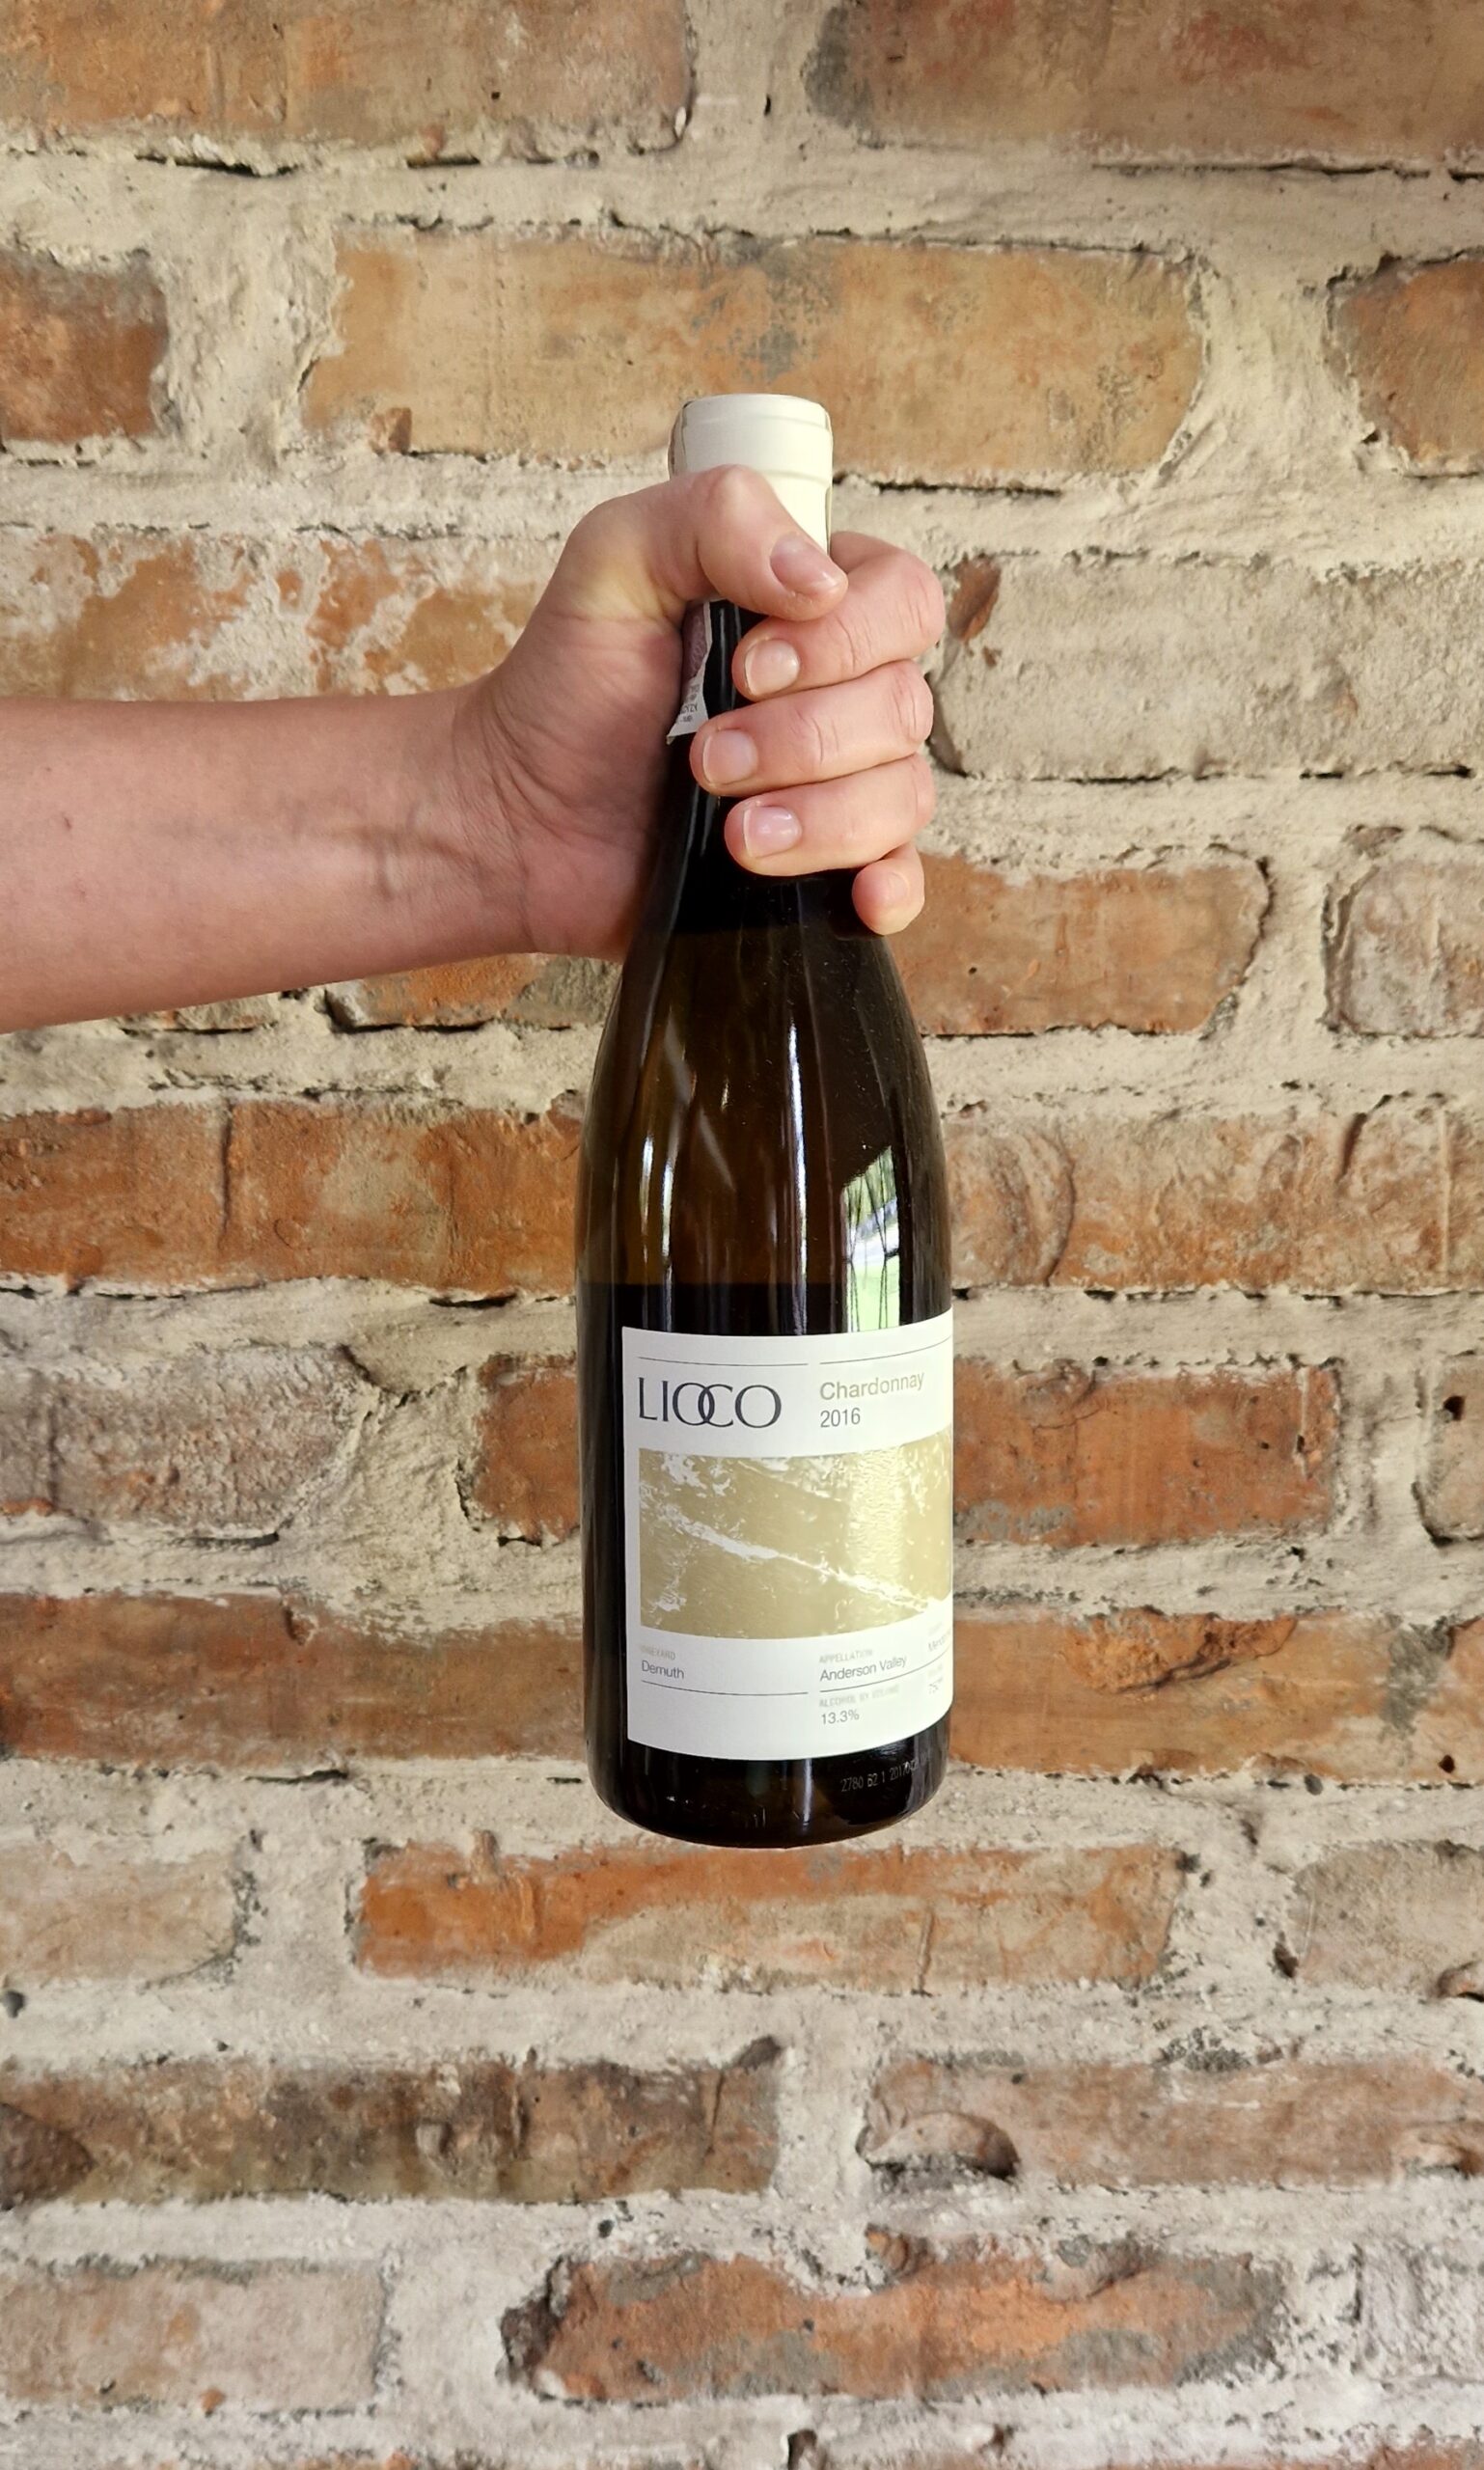 Wino Lioco Demuth Chardonnay 2016